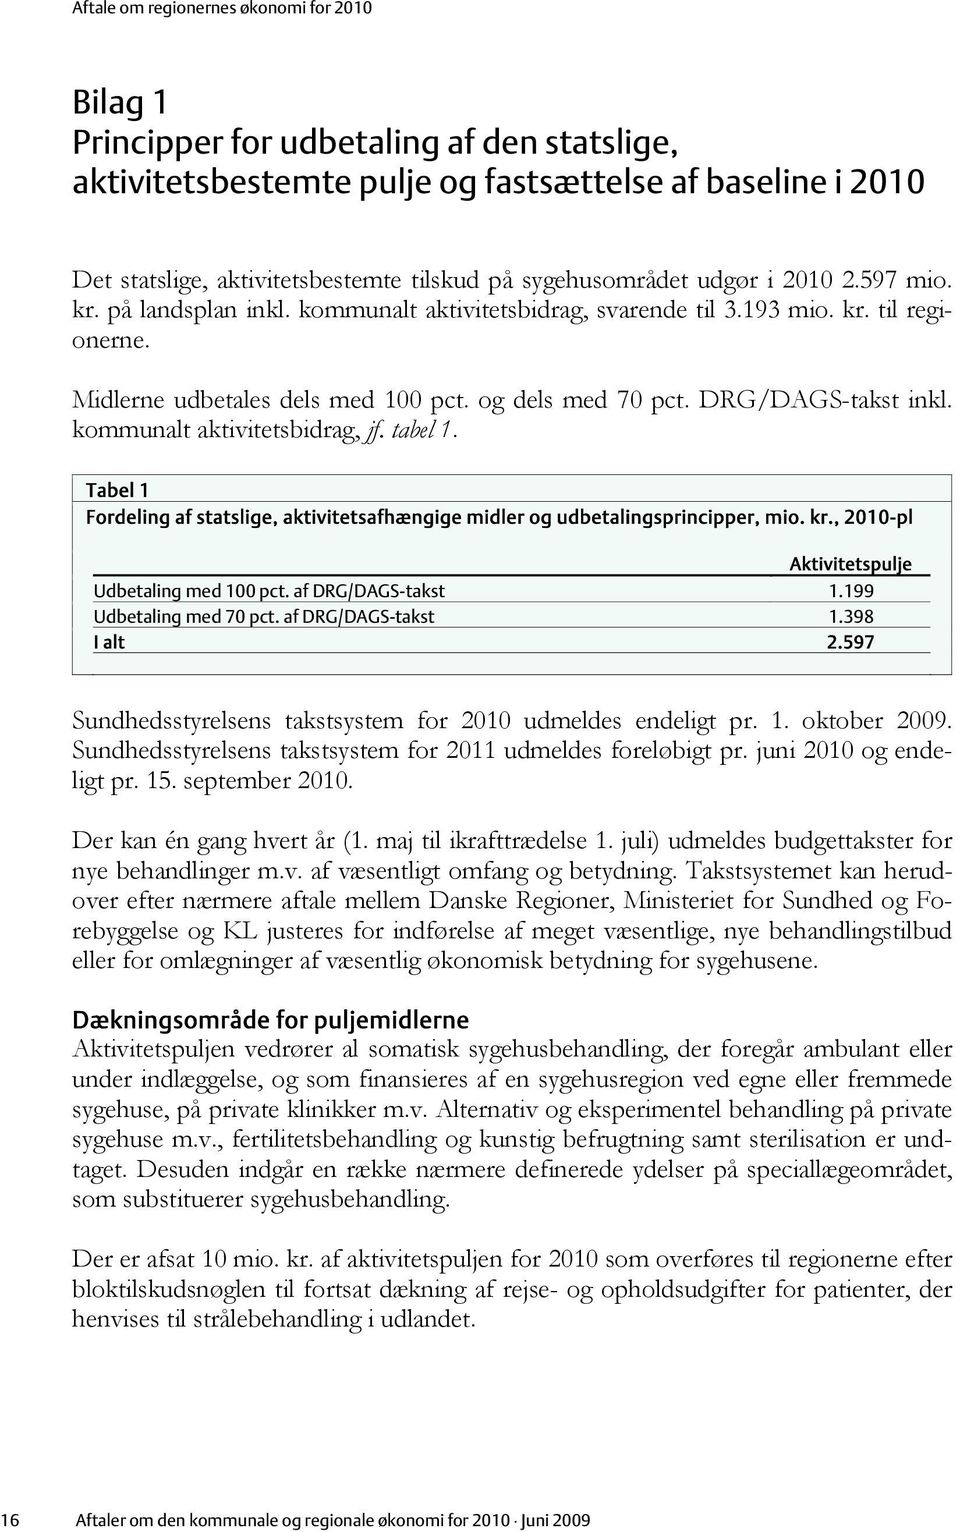 tabel 1. Tabel 1 Fordeling af statslige, aktivitetsafhængige midler og udbetalingsprincipper, mio. kr., 2010-pl Aktivitetspulje Udbetaling med 100 pct. af DRG/DAGS-takst 1.199 Udbetaling med 70 pct.